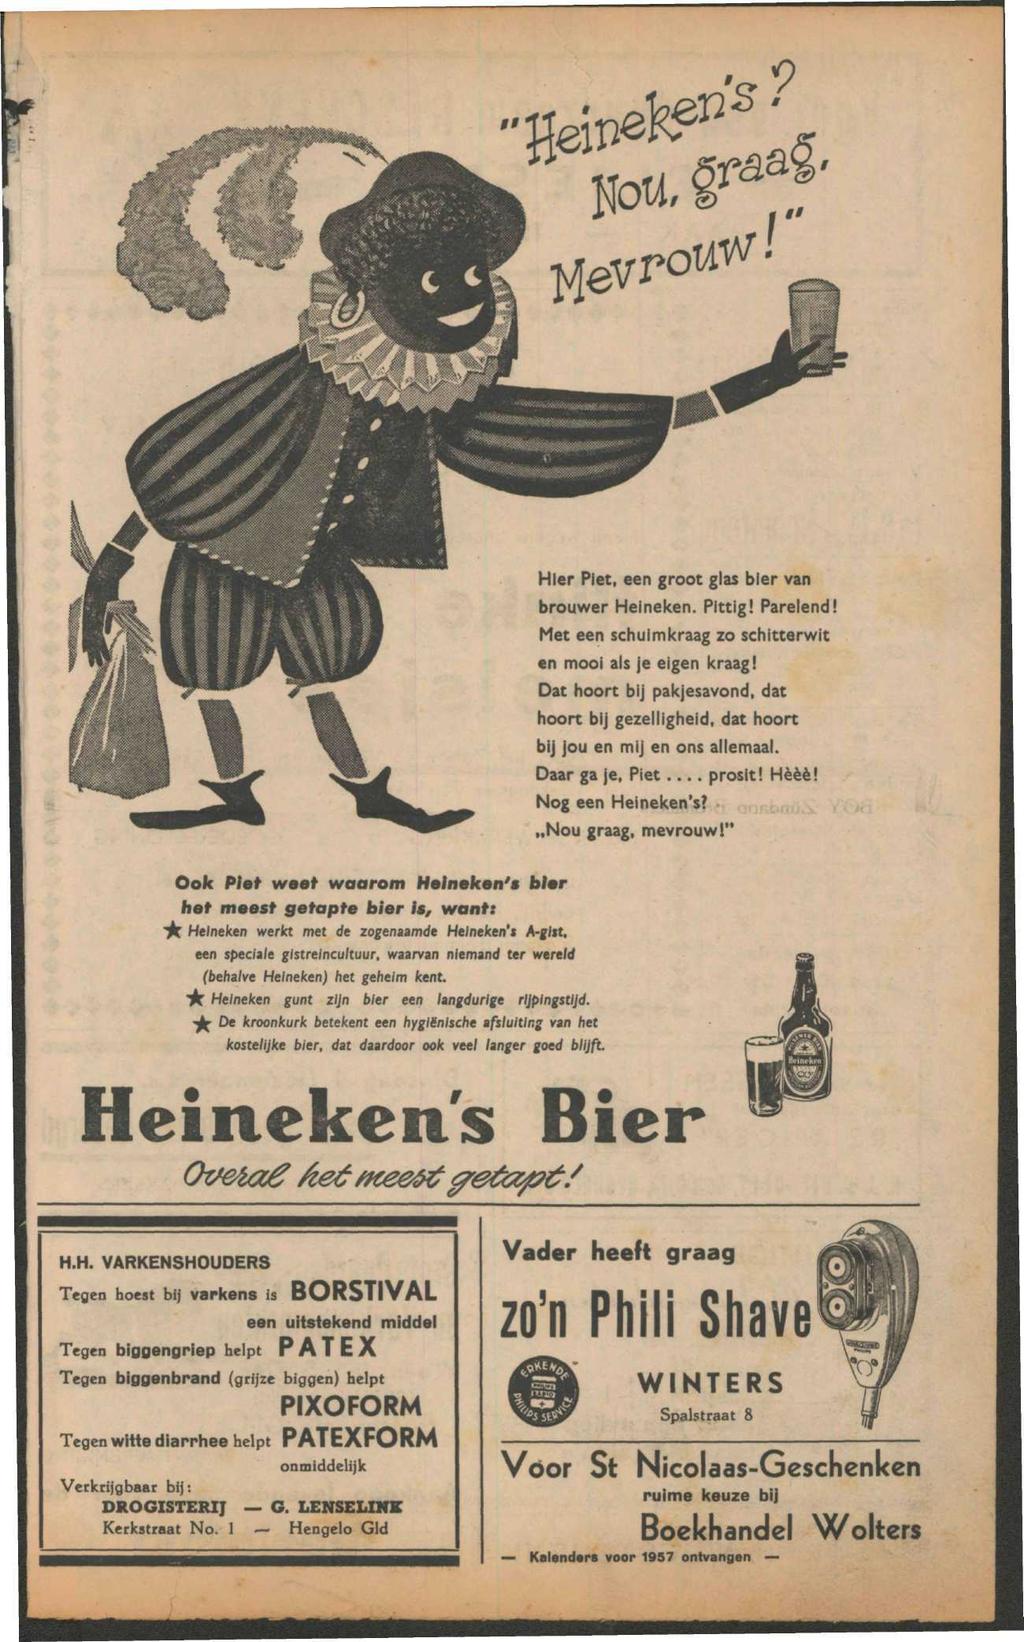 Hier Piet, een groot glas bier van brouwer Heineken. Pittig! Parelend! Met een schuimkraag zo schitterwit en mooi als je eigen kraag!